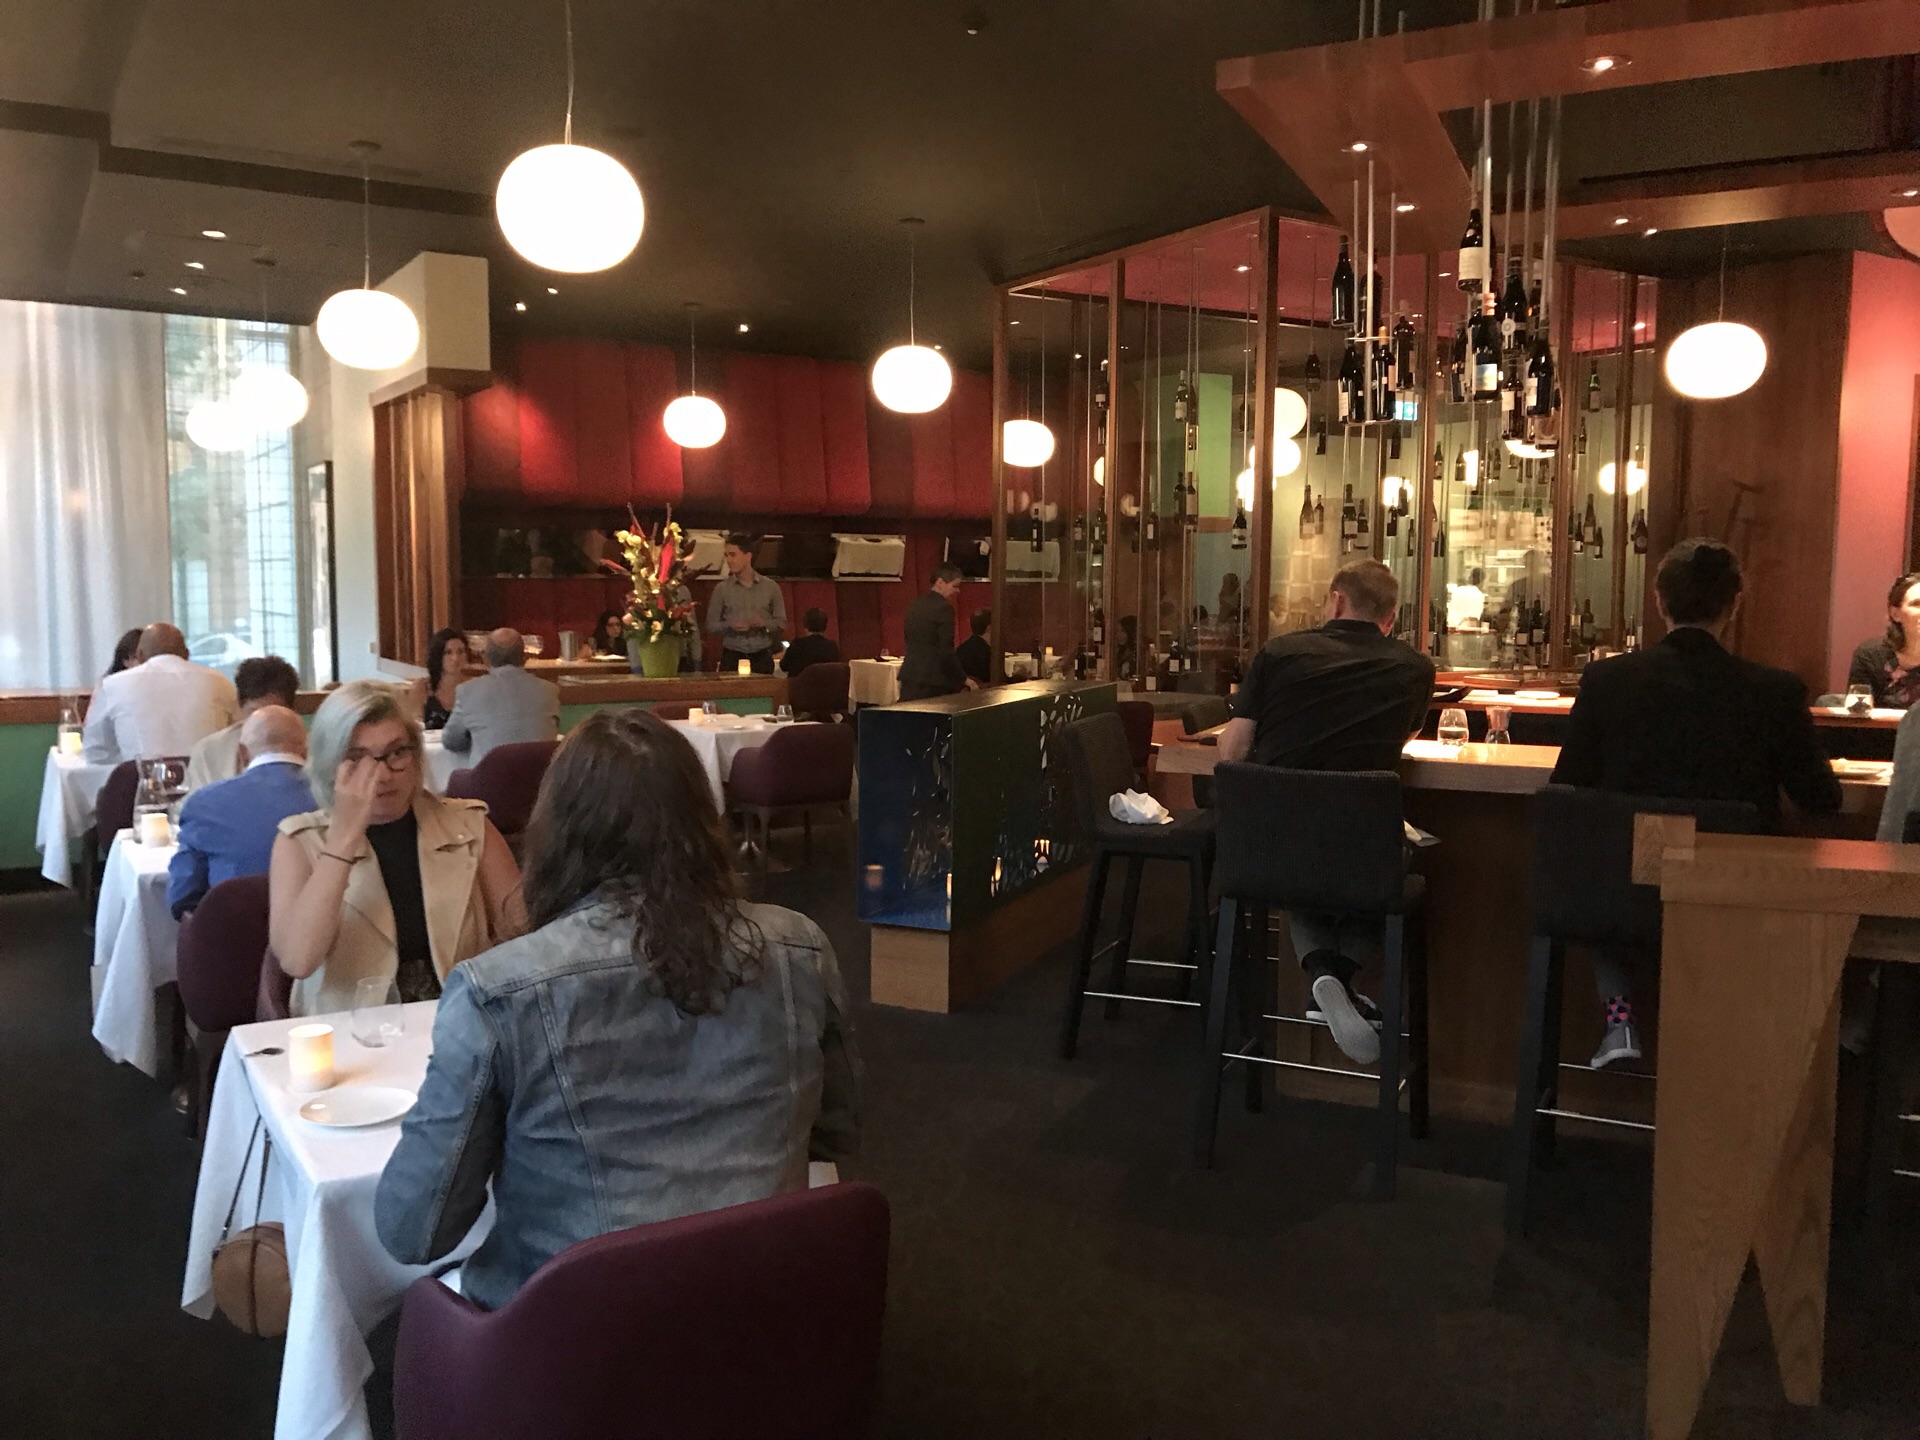 Restaurant Toque! - Montreal Travel Reviews｜Trip.com Travel Guide